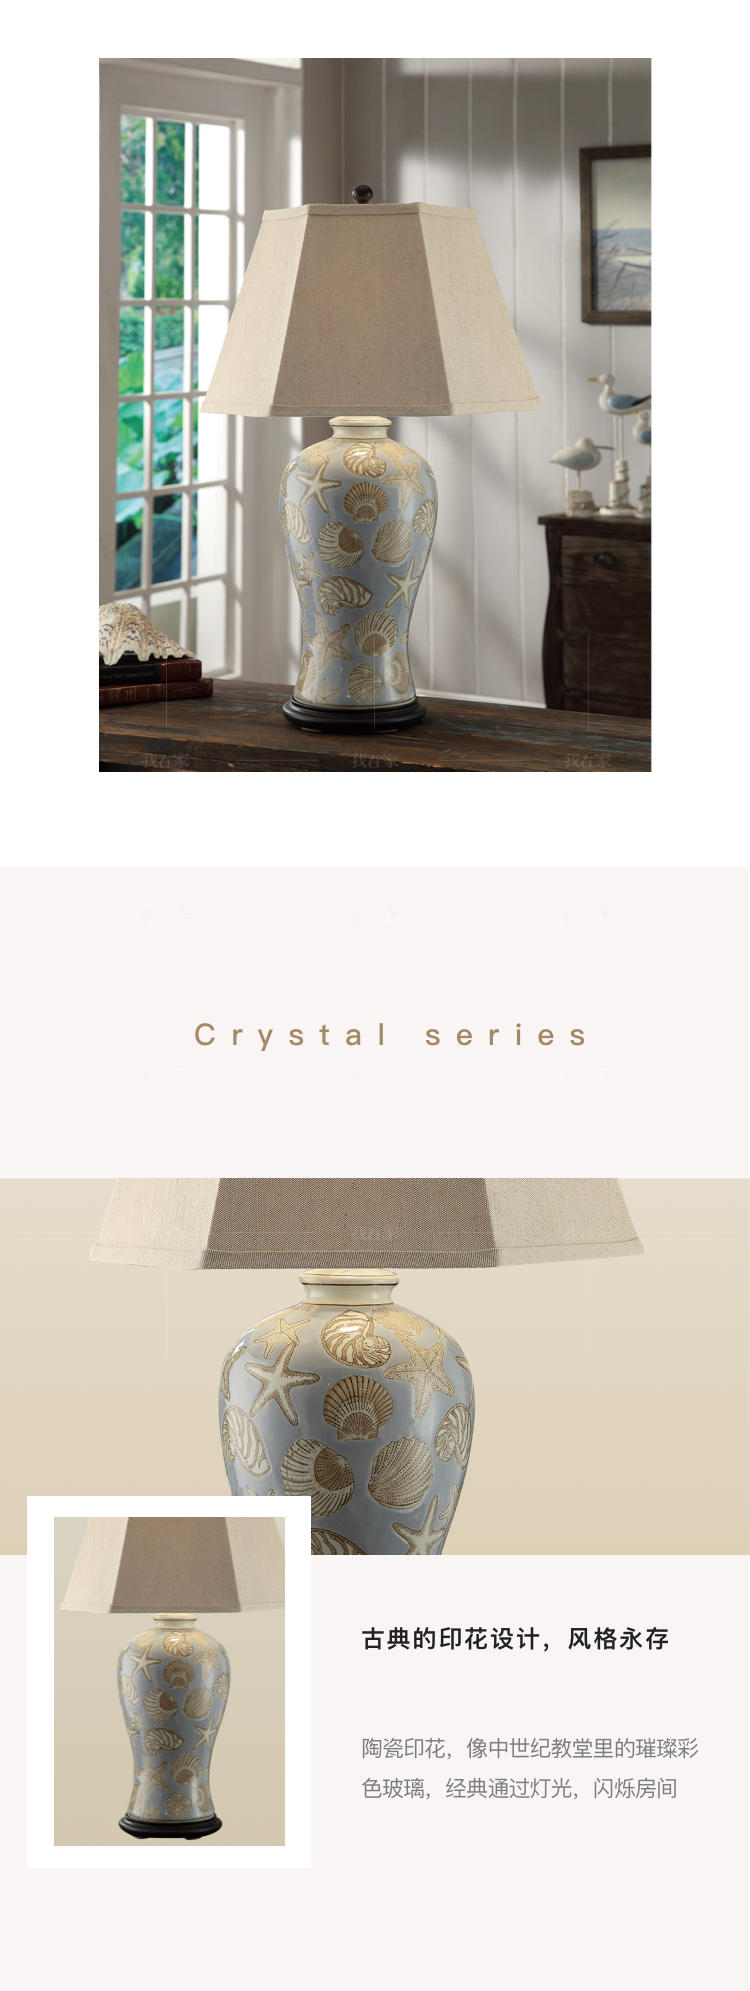 欧式风格海洋物语陶瓷床头台灯的家具详细介绍